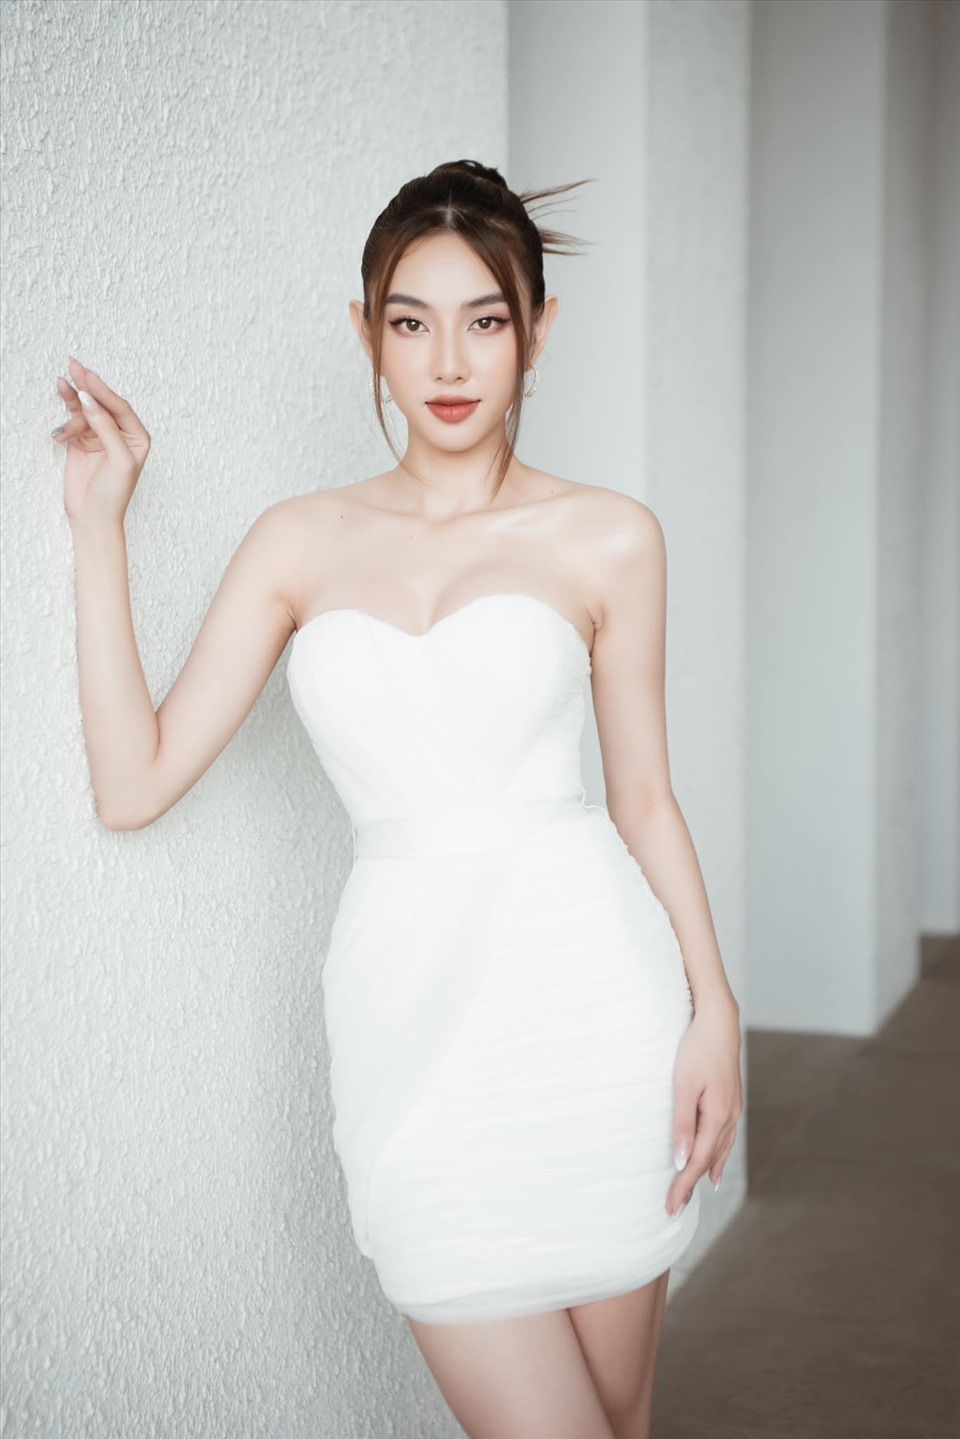 Nguyễn Thúc Thuỳ Tiên sinh năm 1998, là Miss Grand International Vietnam 2021, thay cho Á hậu Thuý An sang Nhật chinh chiến cùng nhiều người đẹp quốc tế. Ảnh: MGVN.